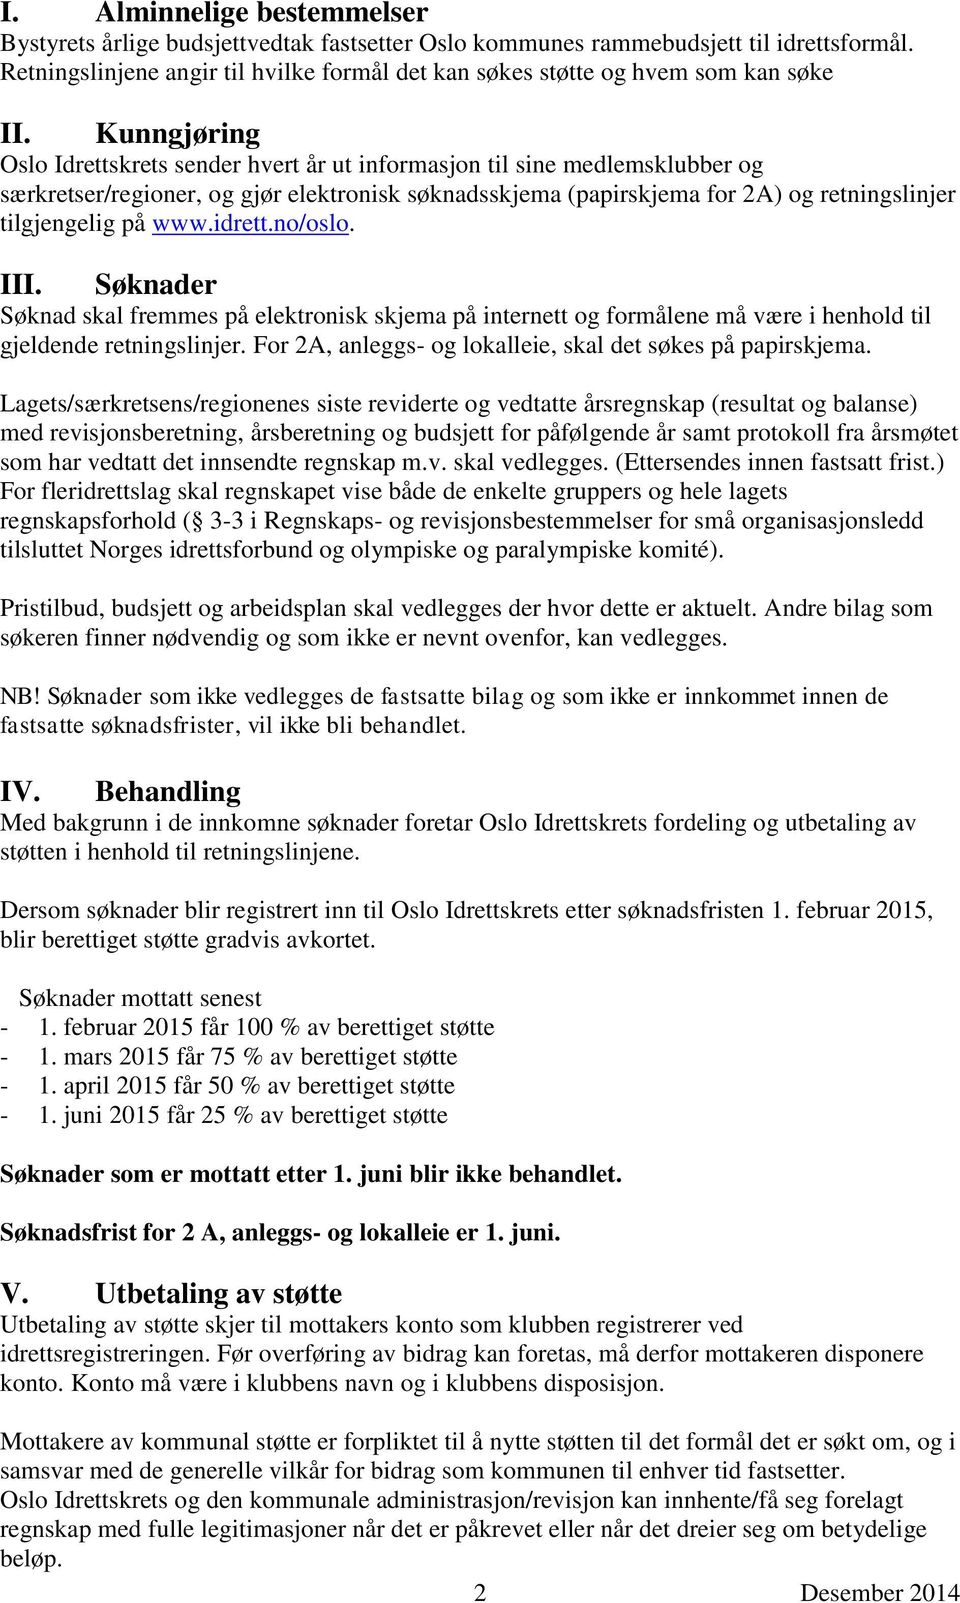 Kunngjøring Oslo Idrettskrets sender hvert år ut informasjon til sine medlemsklubber og særkretser/regioner, og gjør elektronisk søknadsskjema (papirskjema for 2A) og retningslinjer tilgjengelig på